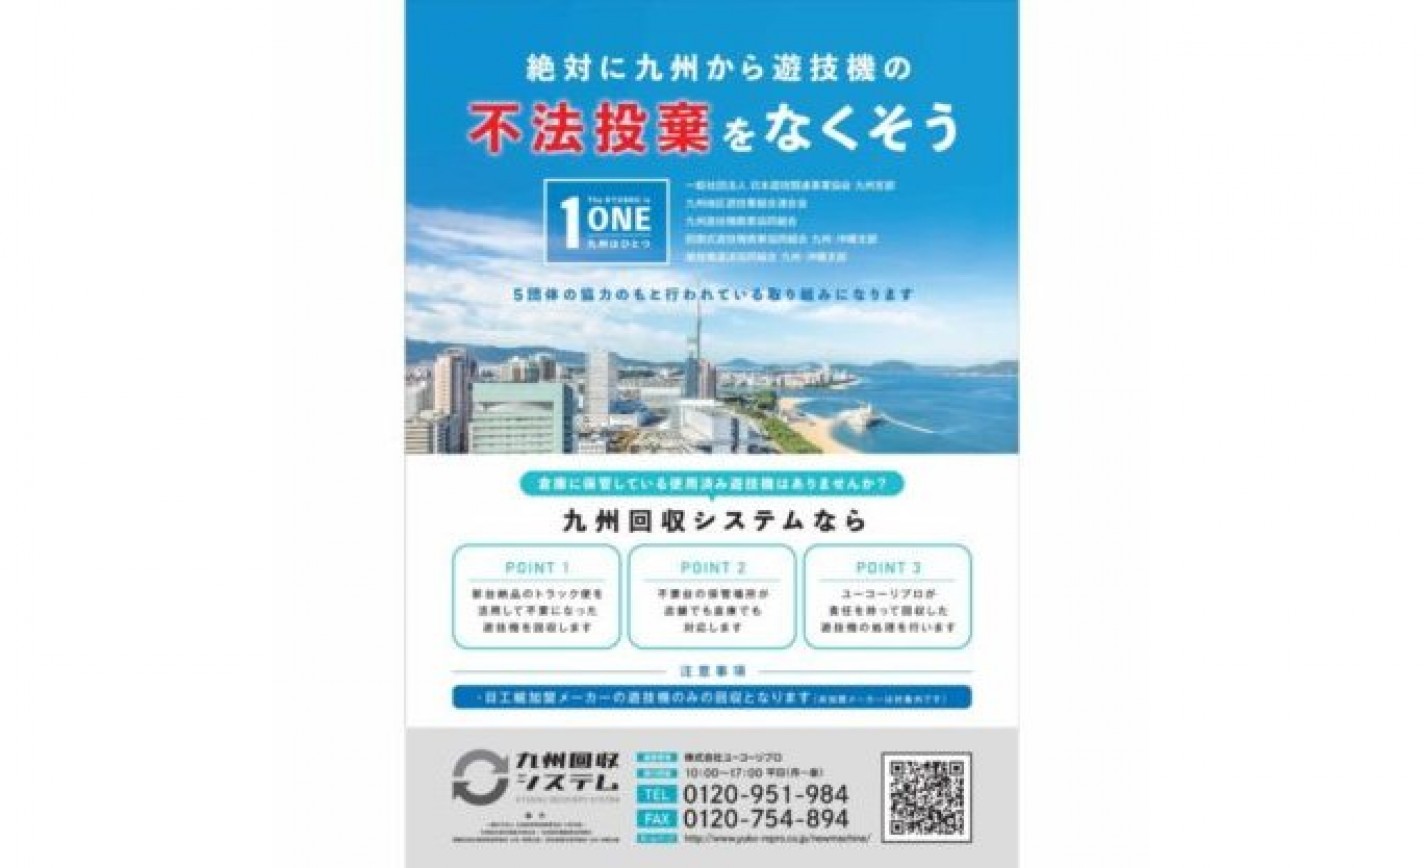 九州の業界5団体が旧規則機の適正処理で連携 eyecatch-image